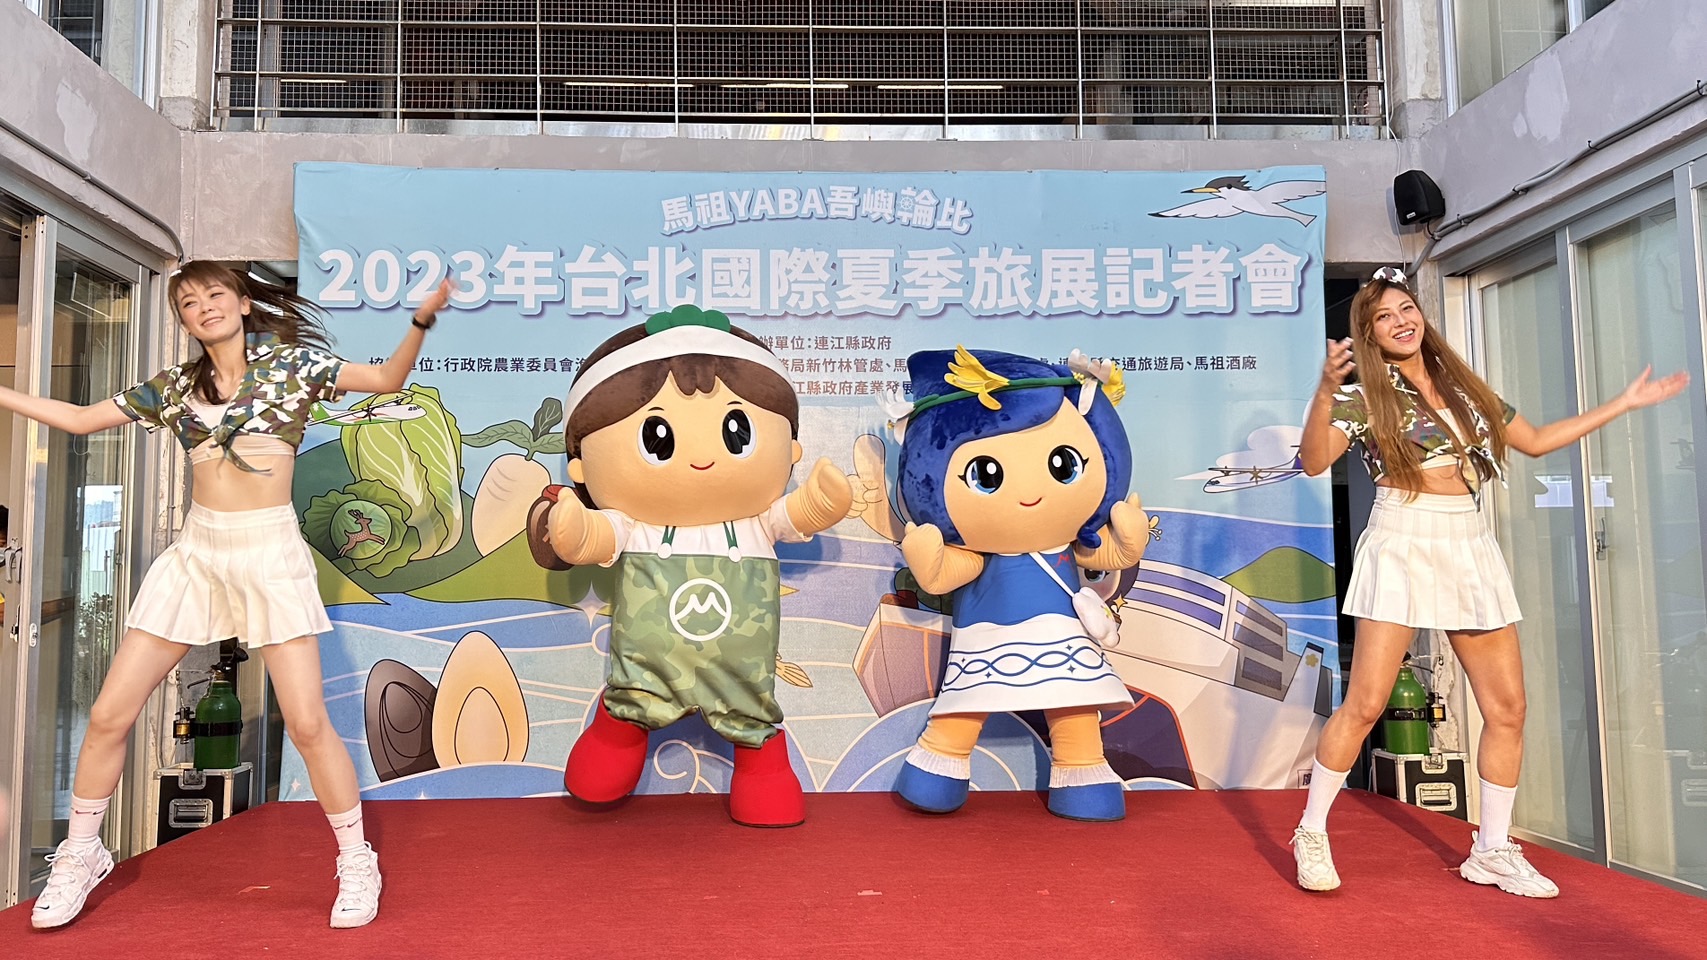 連江縣政府將於7月14日至7月17日連續四天，在台北世貿一館的2023台北國際夏季旅展中展出推廣馬祖地方特色產業和觀光旅遊